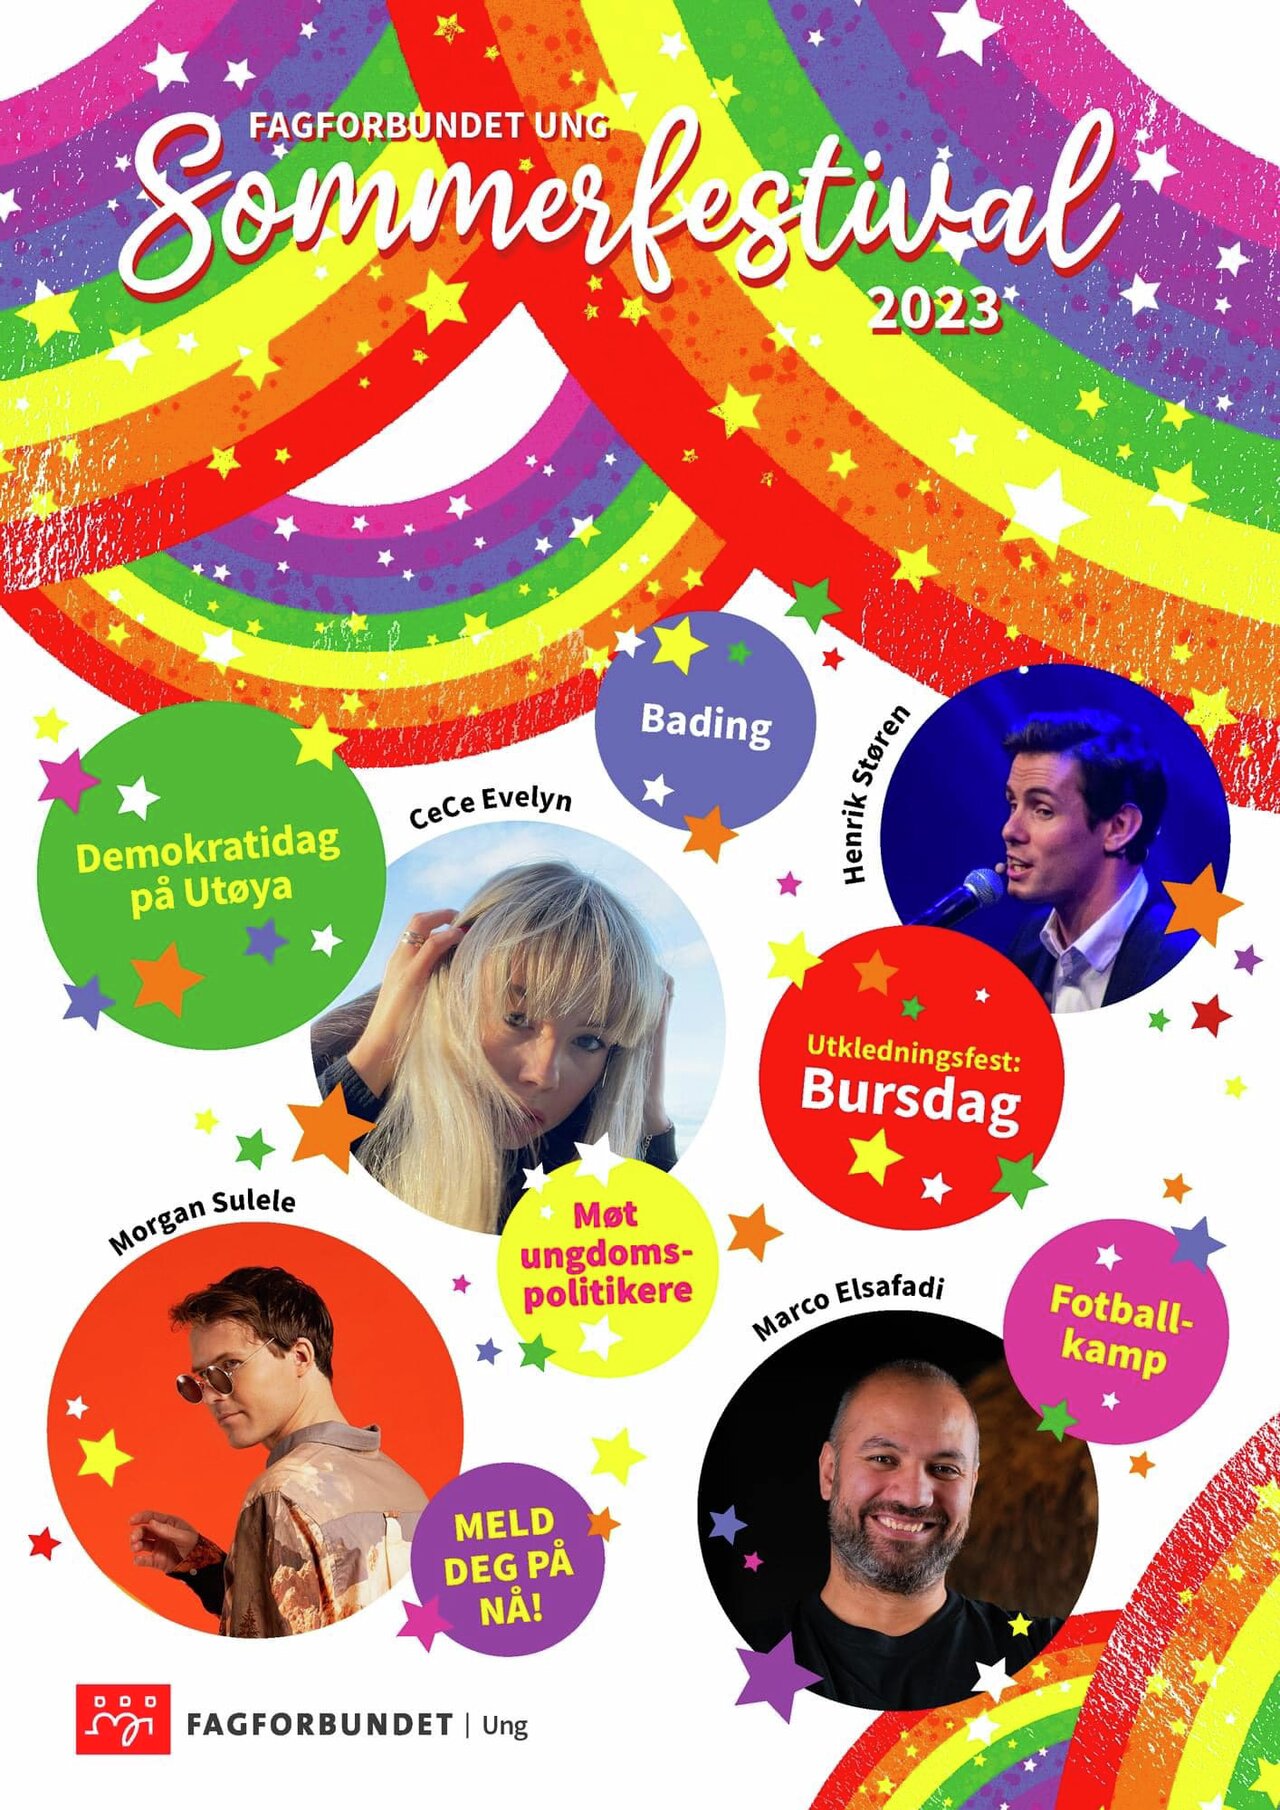 Fagforbundet Ungs Sommerfestival 16.-18.juni 2023 på Sundvolden hotell og Utøya